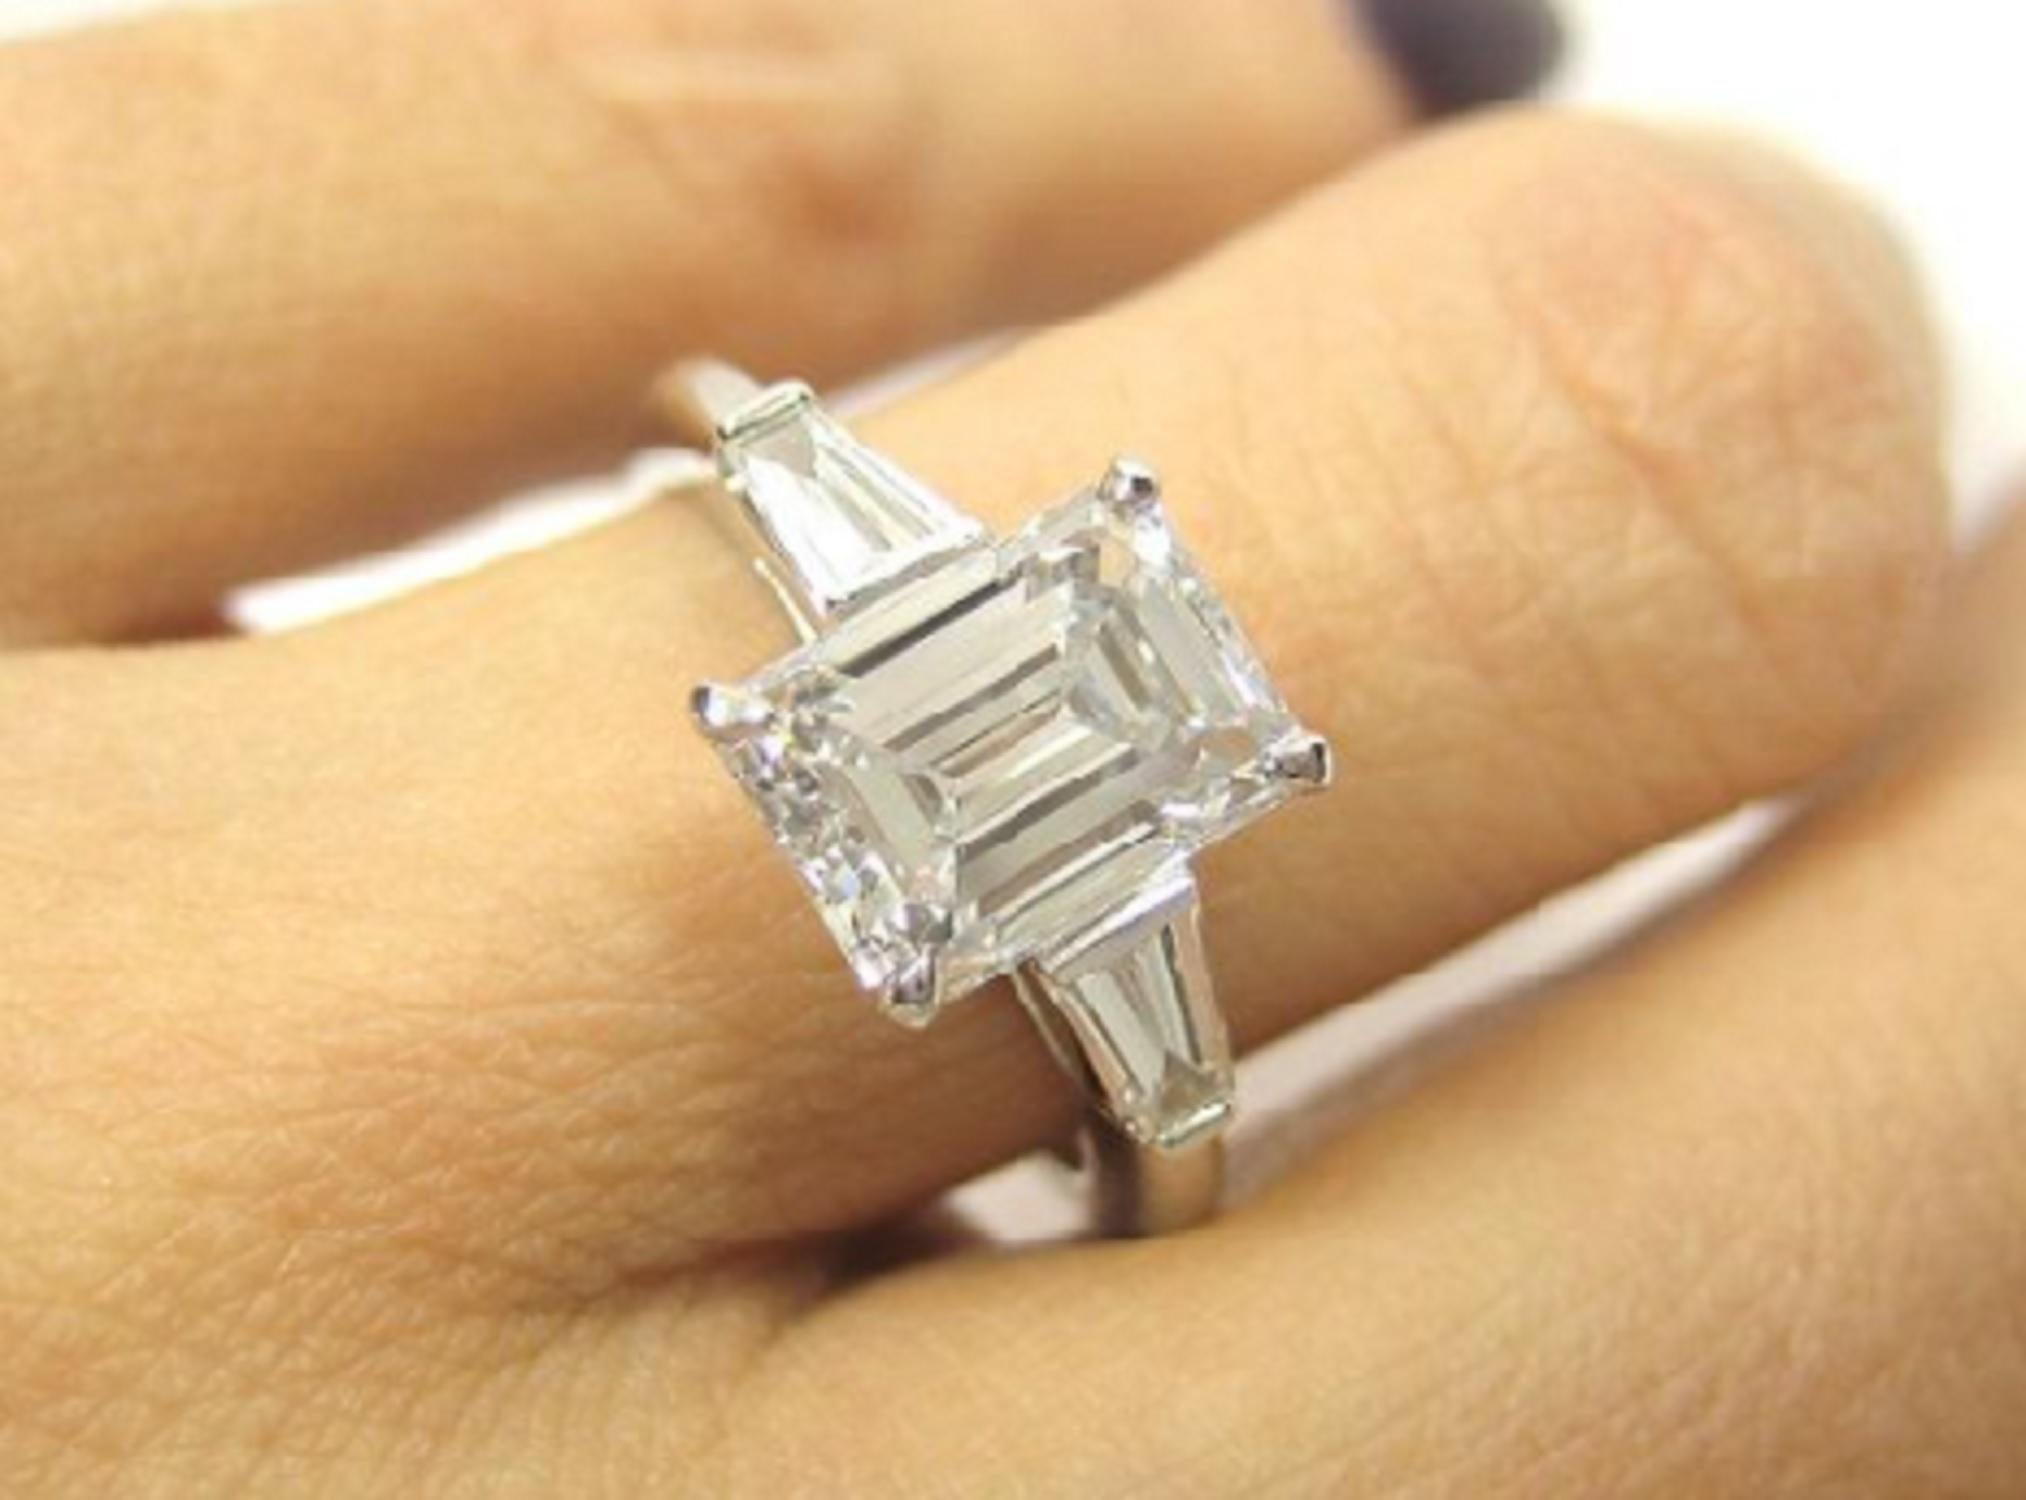 Une bague exquise en diamant taille émeraude composée d'un diamant taille émeraude très pur de 2,30 carats qui est en fait plus gros qu'un poids normal de 2,30 carats.

La bague a été fabriquée à la main en Italie en platine massif avec des